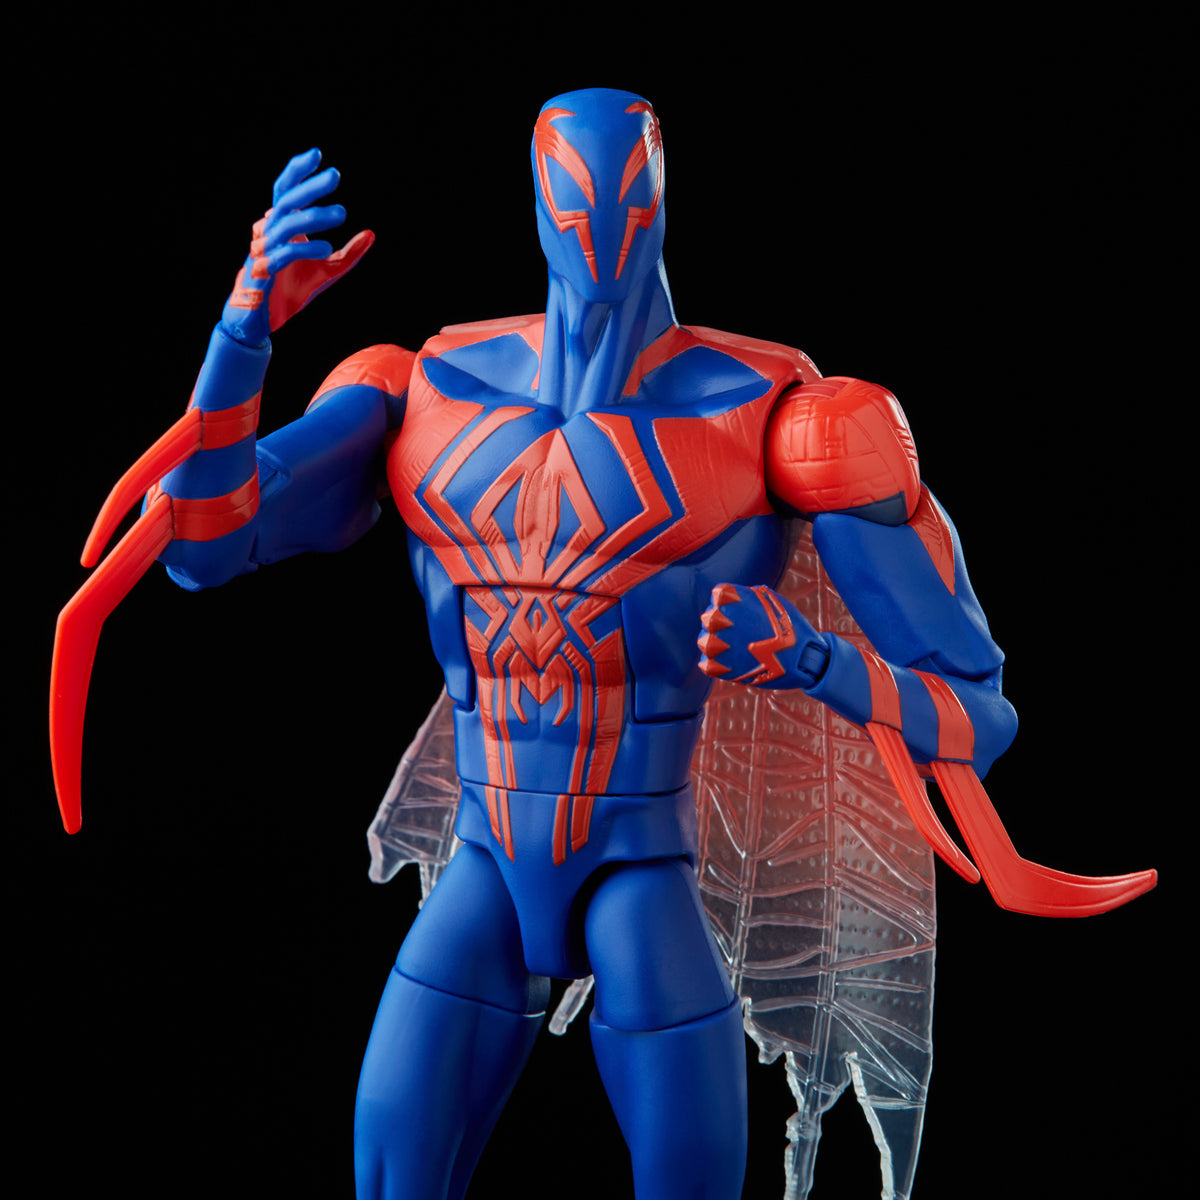 Hasbro Marvel Legends Series Spider-Man – Hasbro Pulse